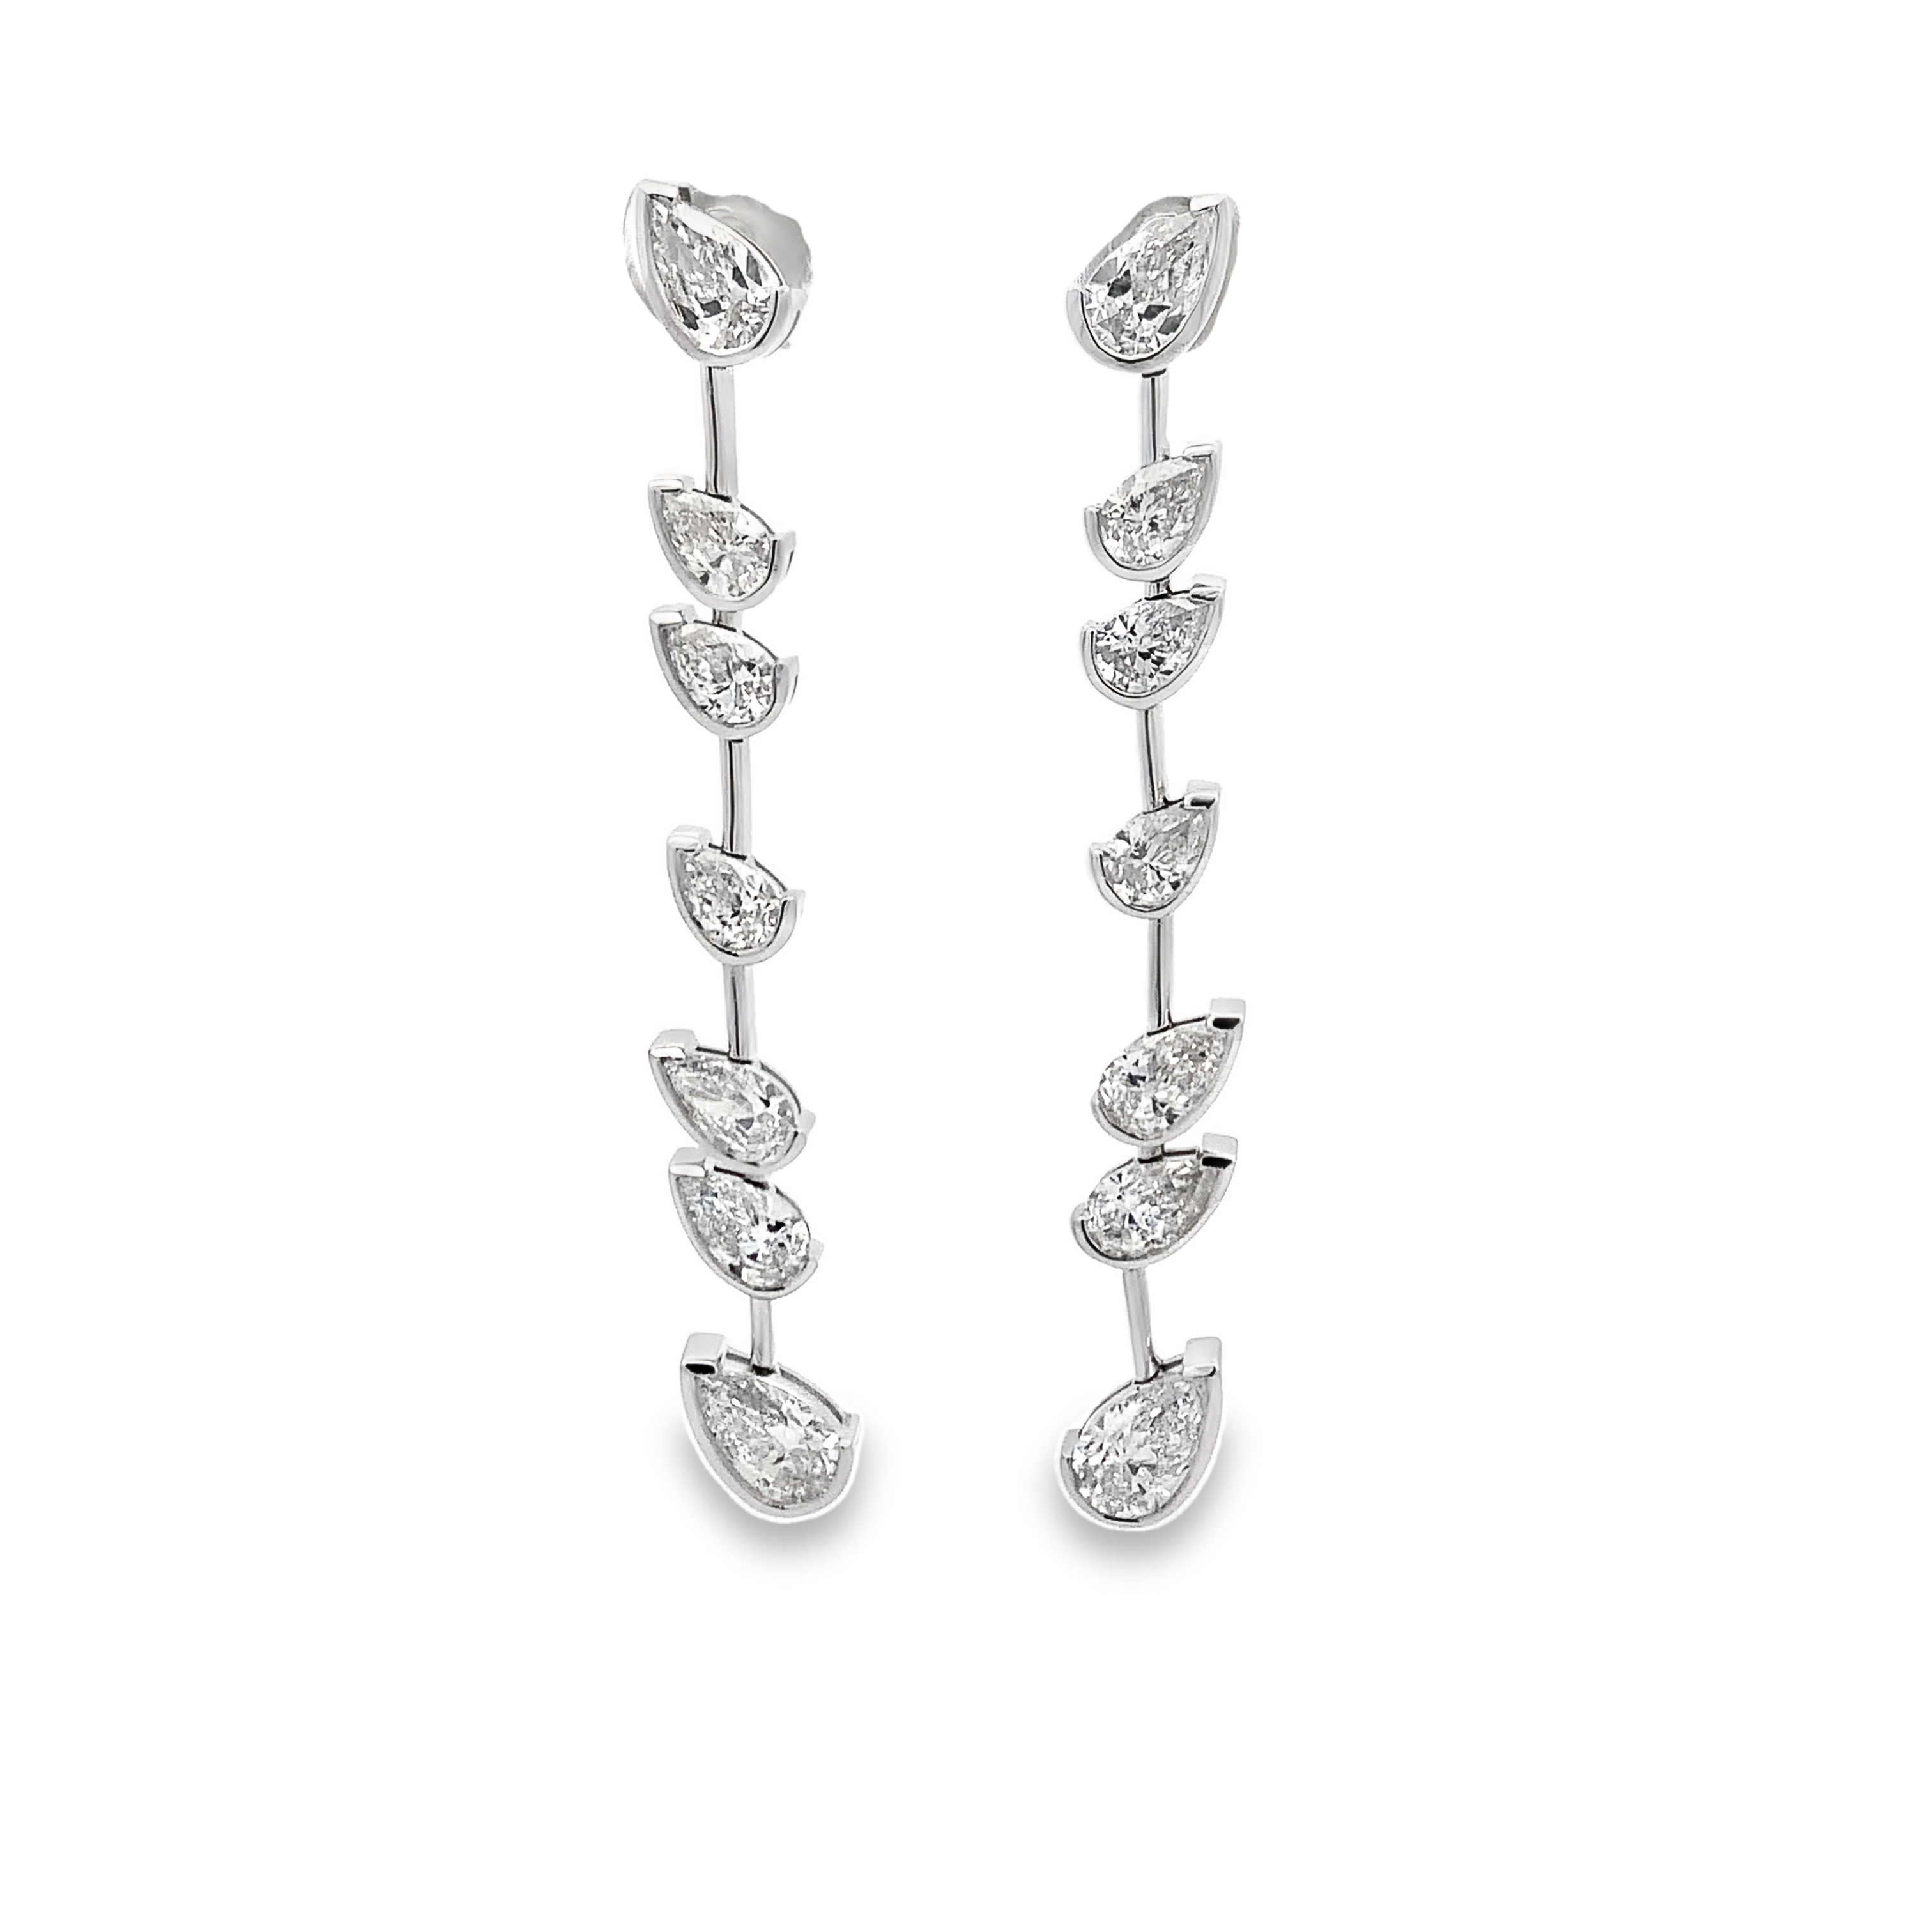 Norman Silverman 18K White Gold Pear Cut Diamond Dangling Earrings